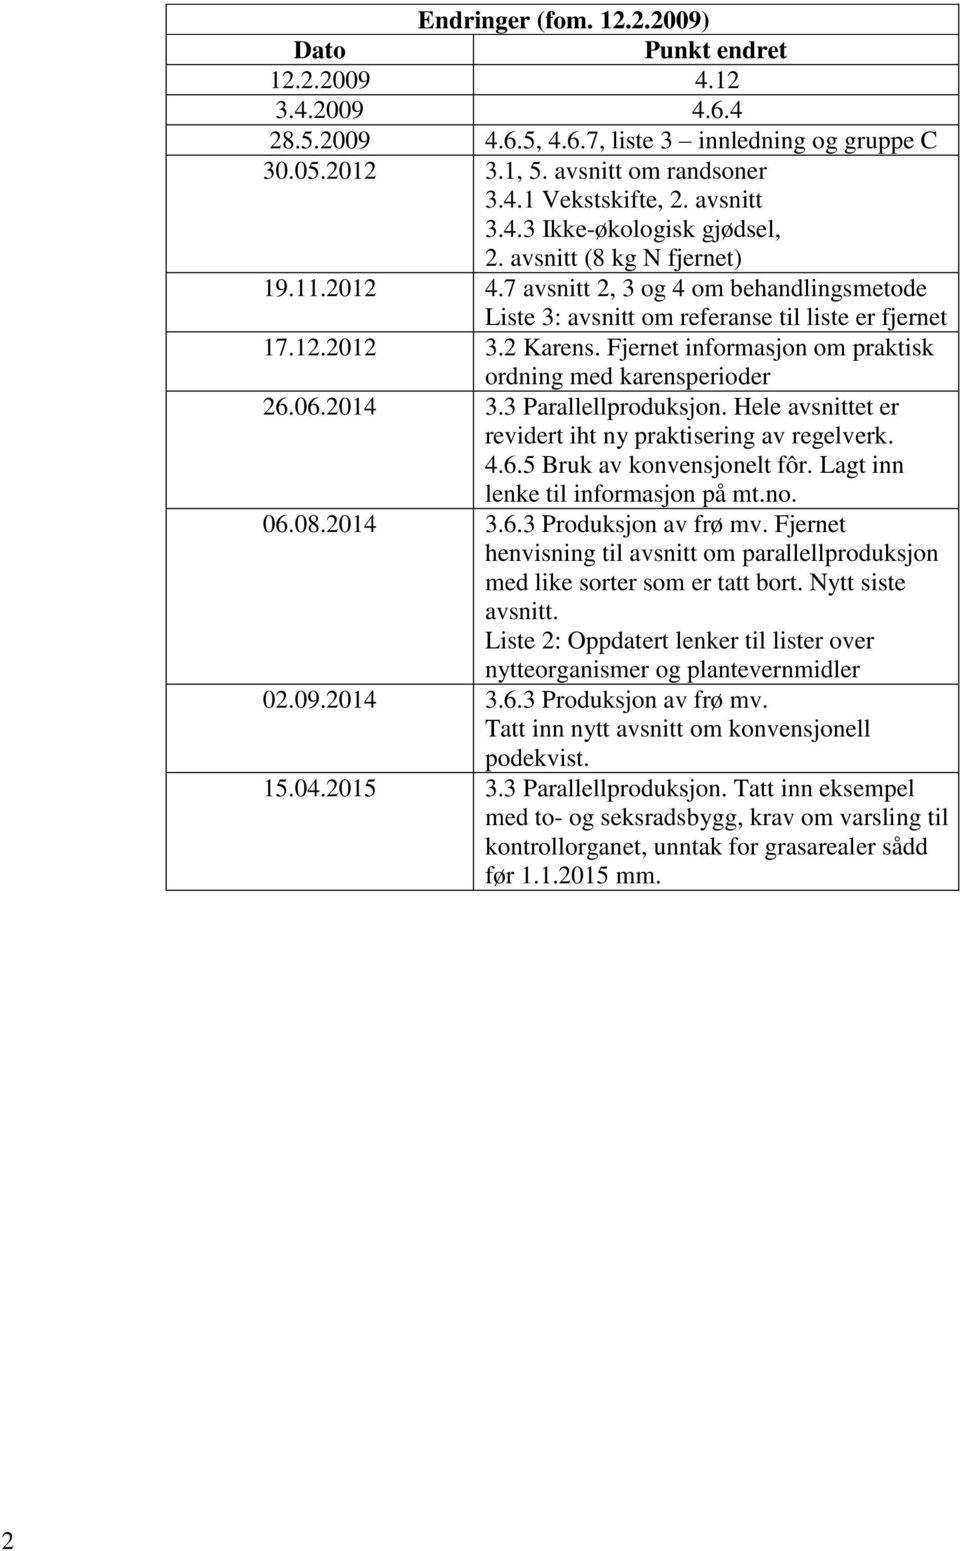 Fjernet informasjon om praktisk ordning med karensperioder 26.06.2014 3.3 Parallellproduksjon. Hele avsnittet er revidert iht ny praktisering av regelverk. 4.6.5 Bruk av konvensjonelt fôr.